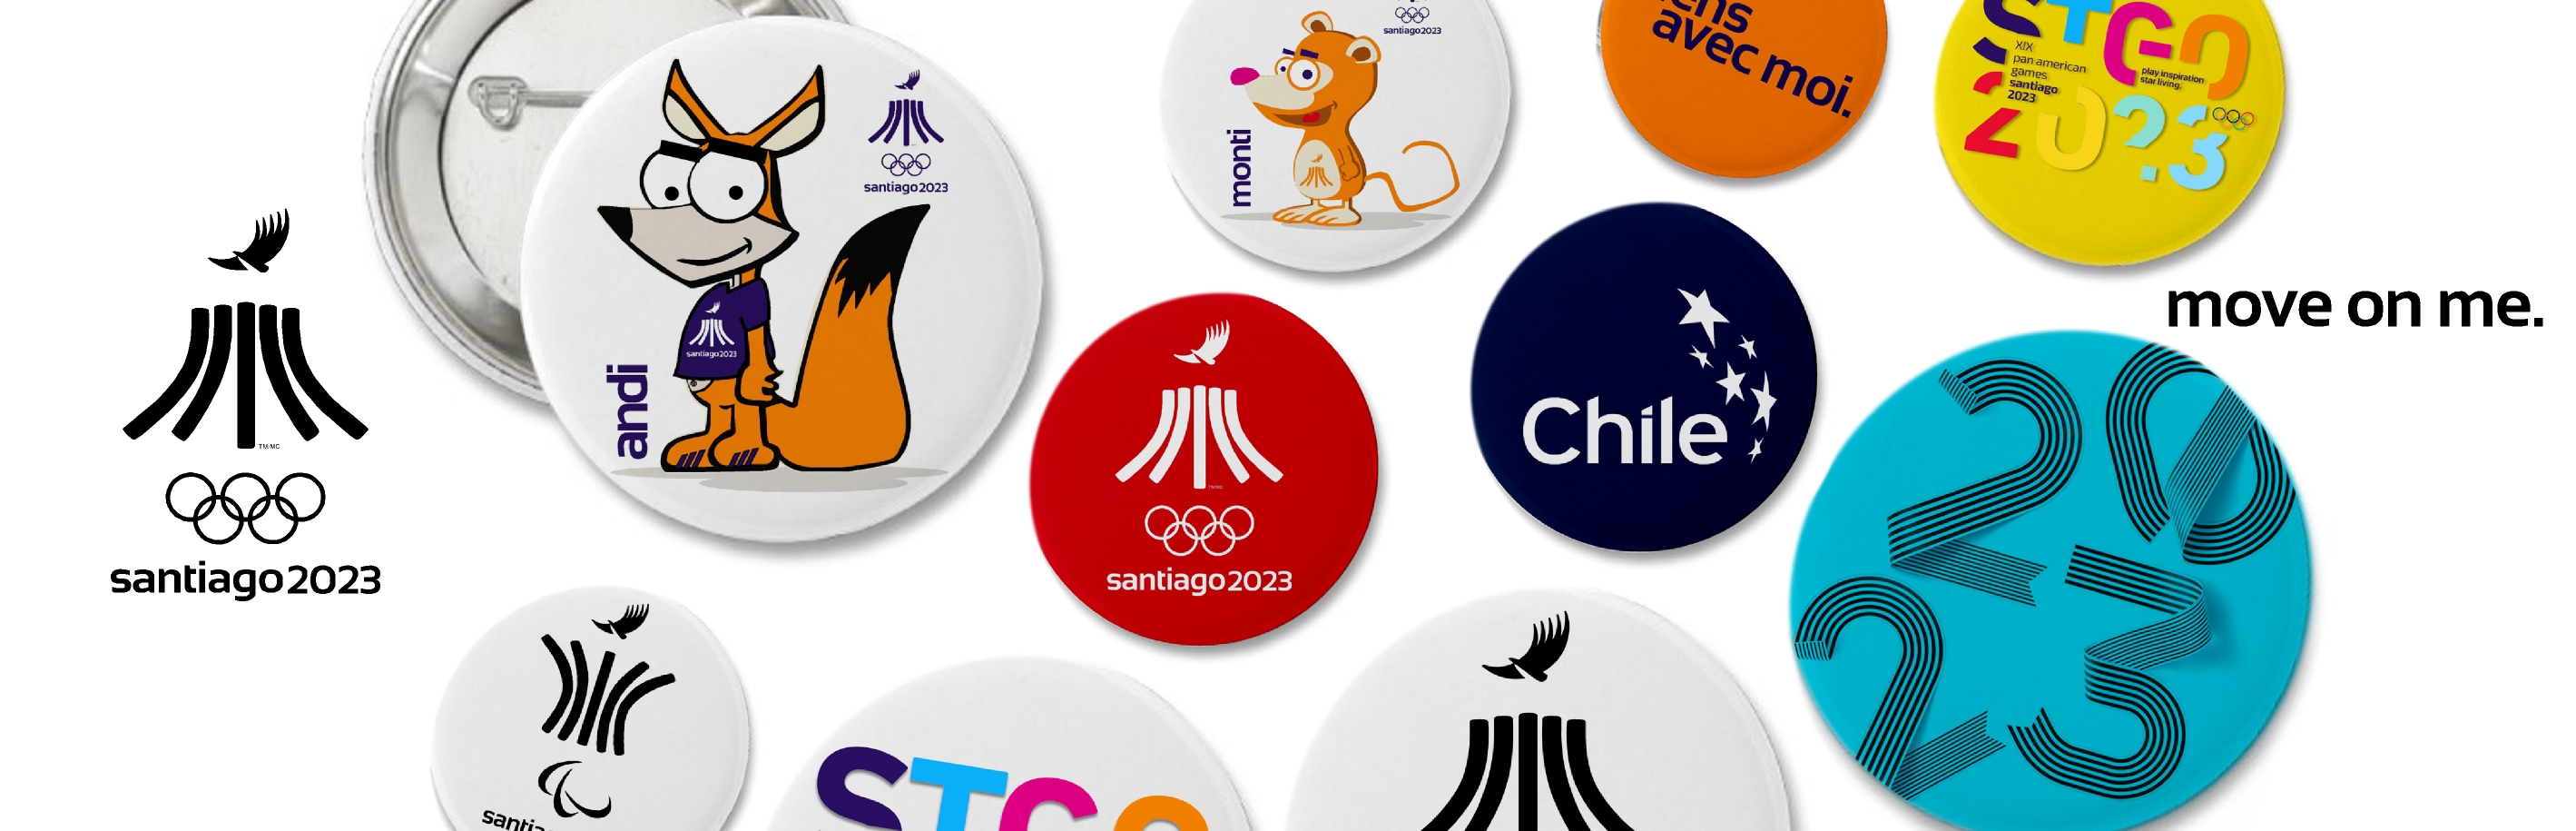 XIX Juegos Panamericanos Santiago 2023 – Pinmania